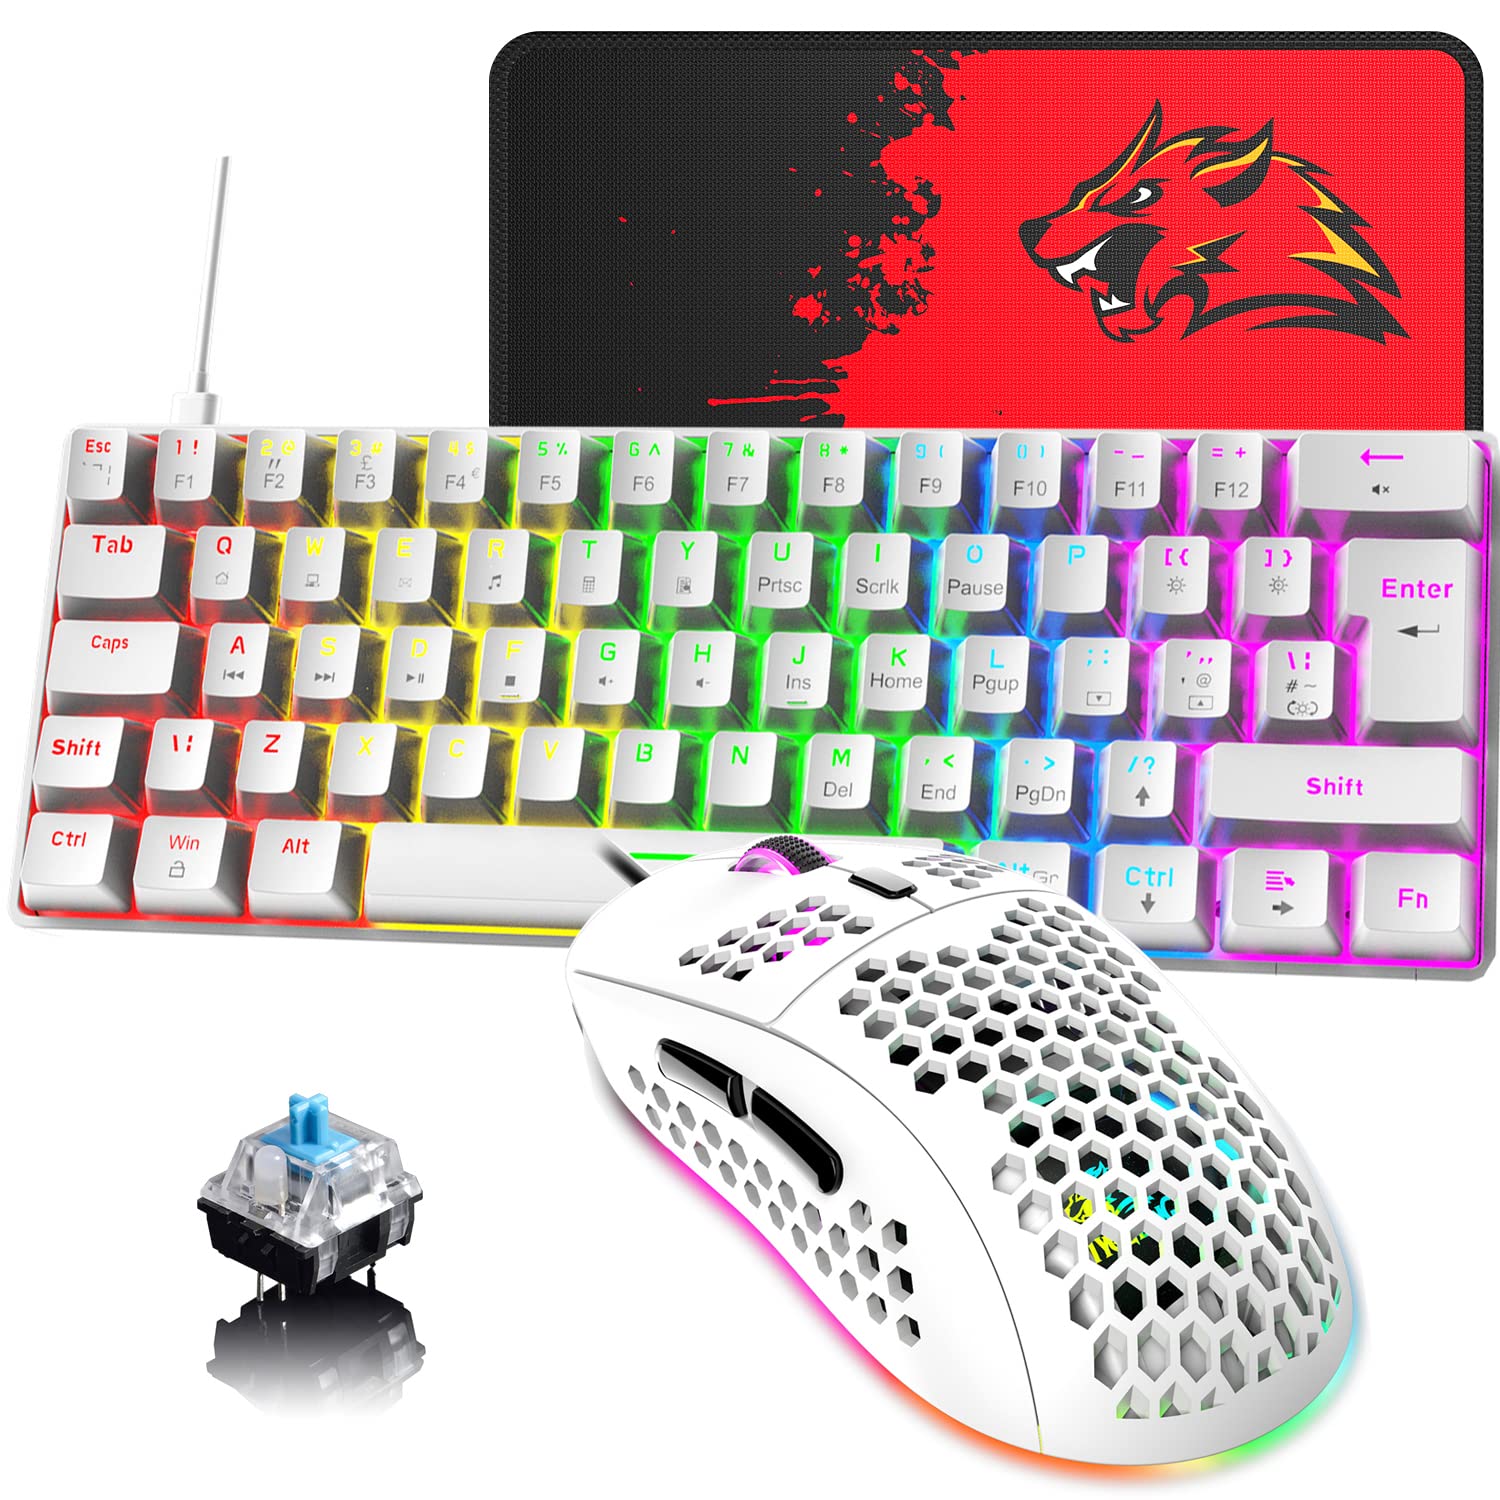 60 % UK-Layout Kabelgebundene Gaming-Tastatur und -Maus 62Keys Mini Compact Mechanical Keyboard, 19 Rainbow Lighting Effect +6 RGB Lighting Effect6400 DPI Leichte Gaming-Maus (weiß/Blauer Schalter)